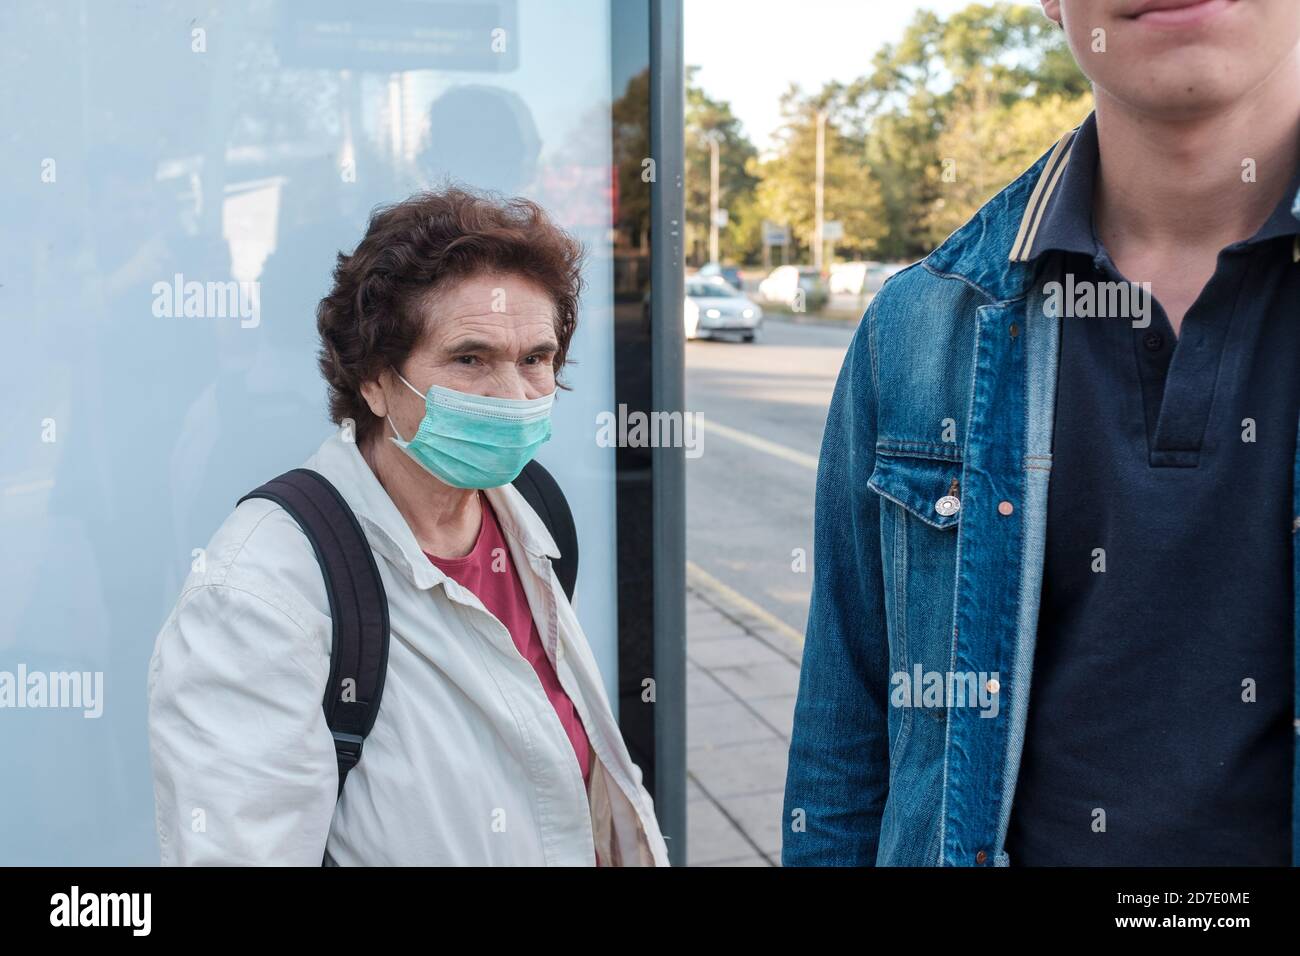 Covid 19 ans femme portant un masque de protection près de jeune homme sans masque à l'arrêt de bus Banque D'Images